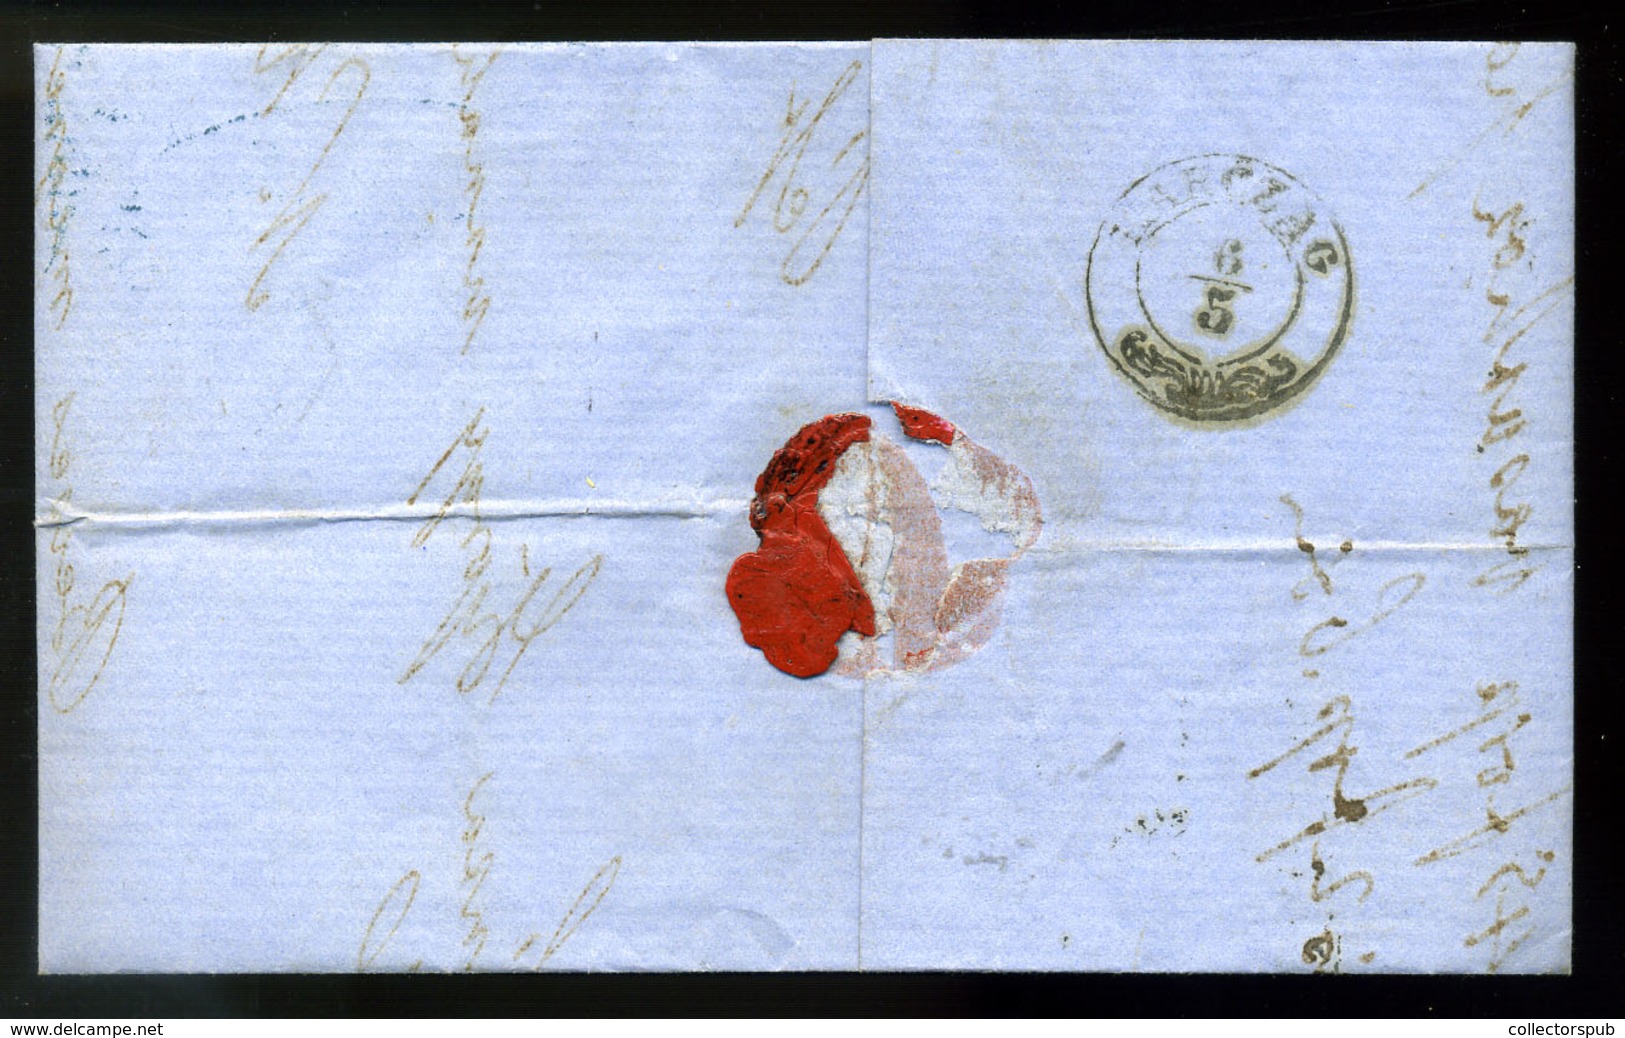 95749 PESTH 1858. Céges Levél 2*3Kr Ral Karcagra Küldve - Used Stamps